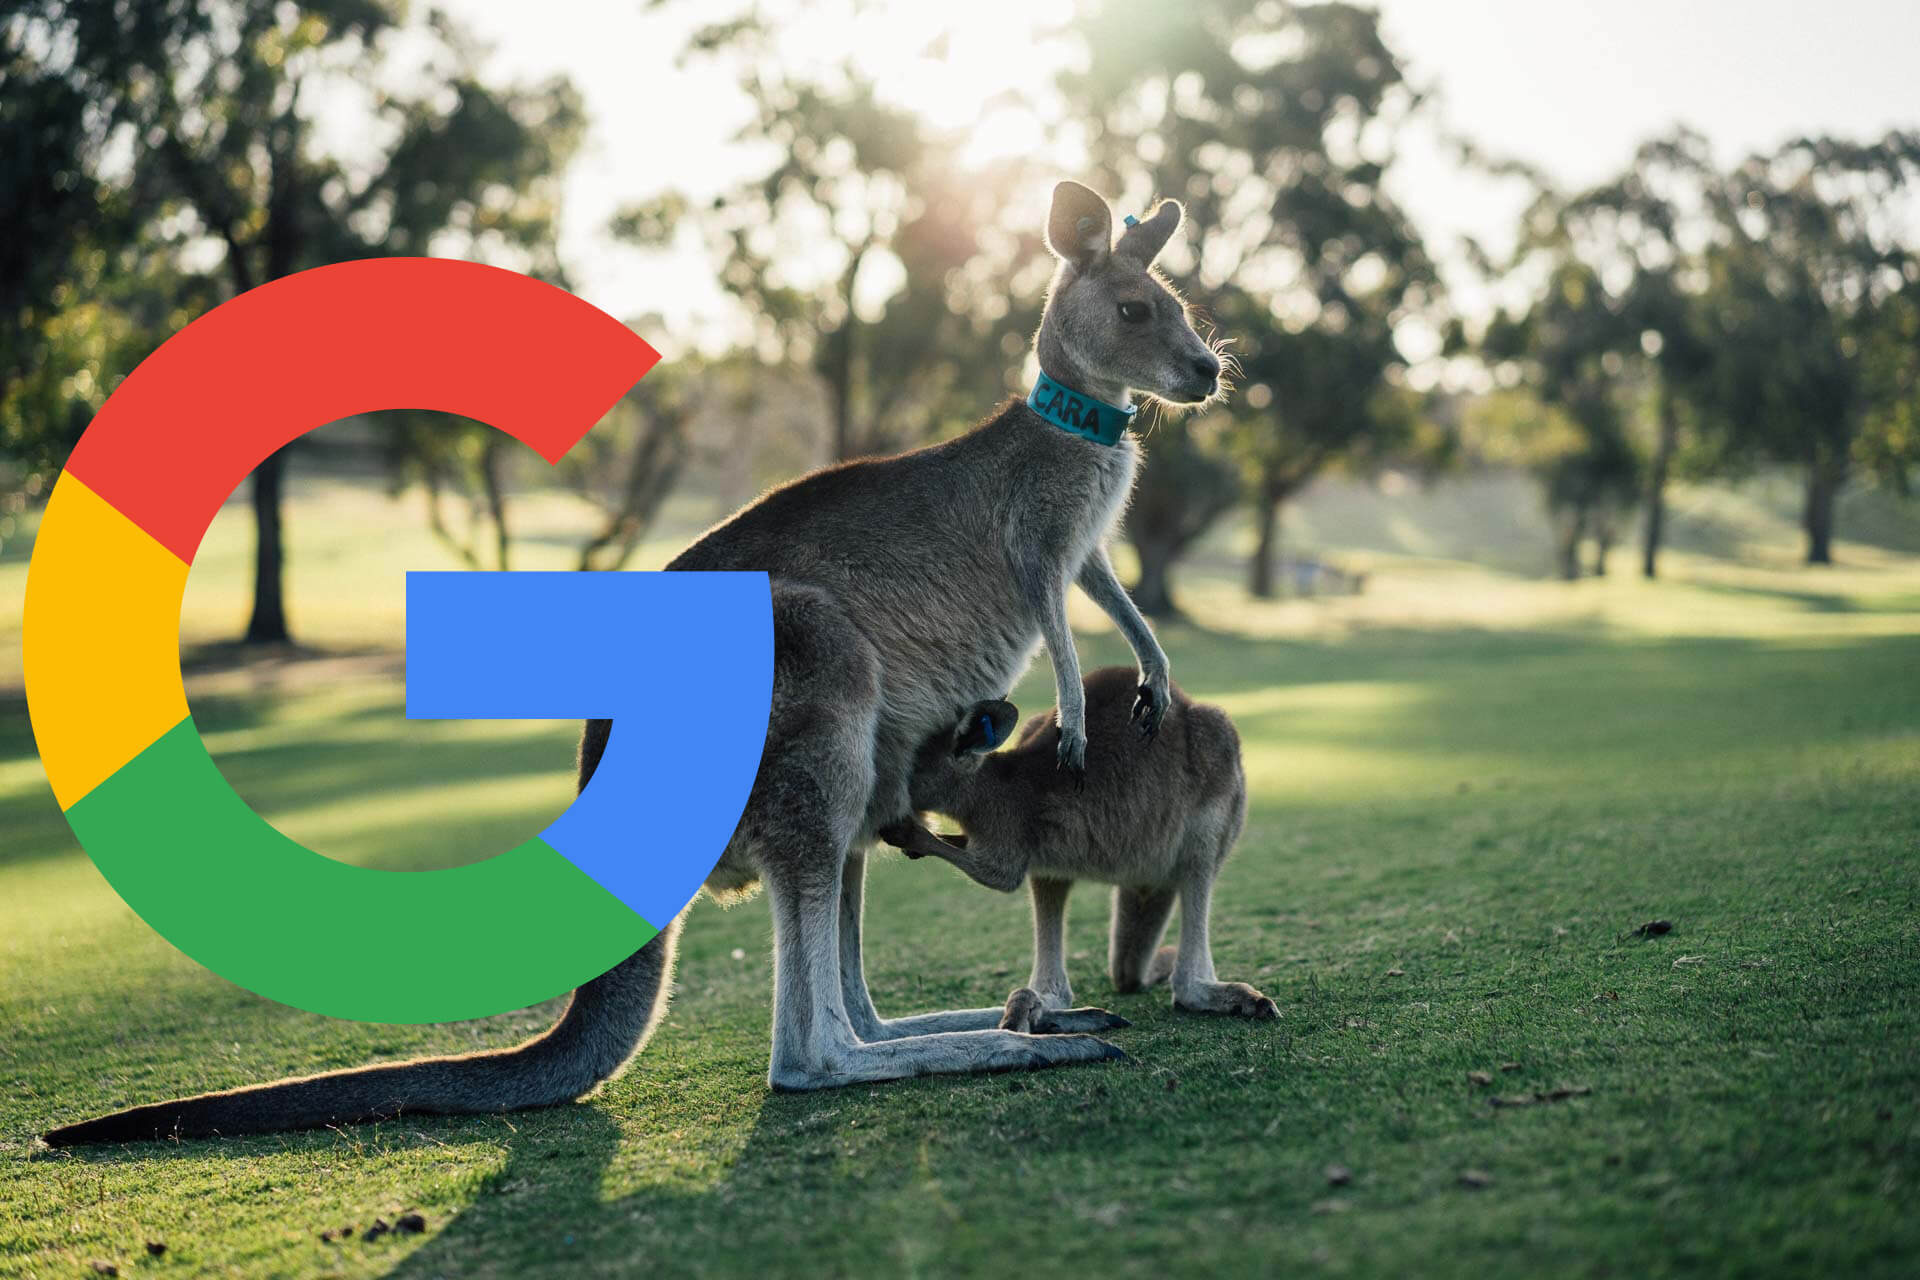 سرمایه گذاری یک میلیارد دلاری گوگل در توسعه اقتصاد دیجیتال استرالیا